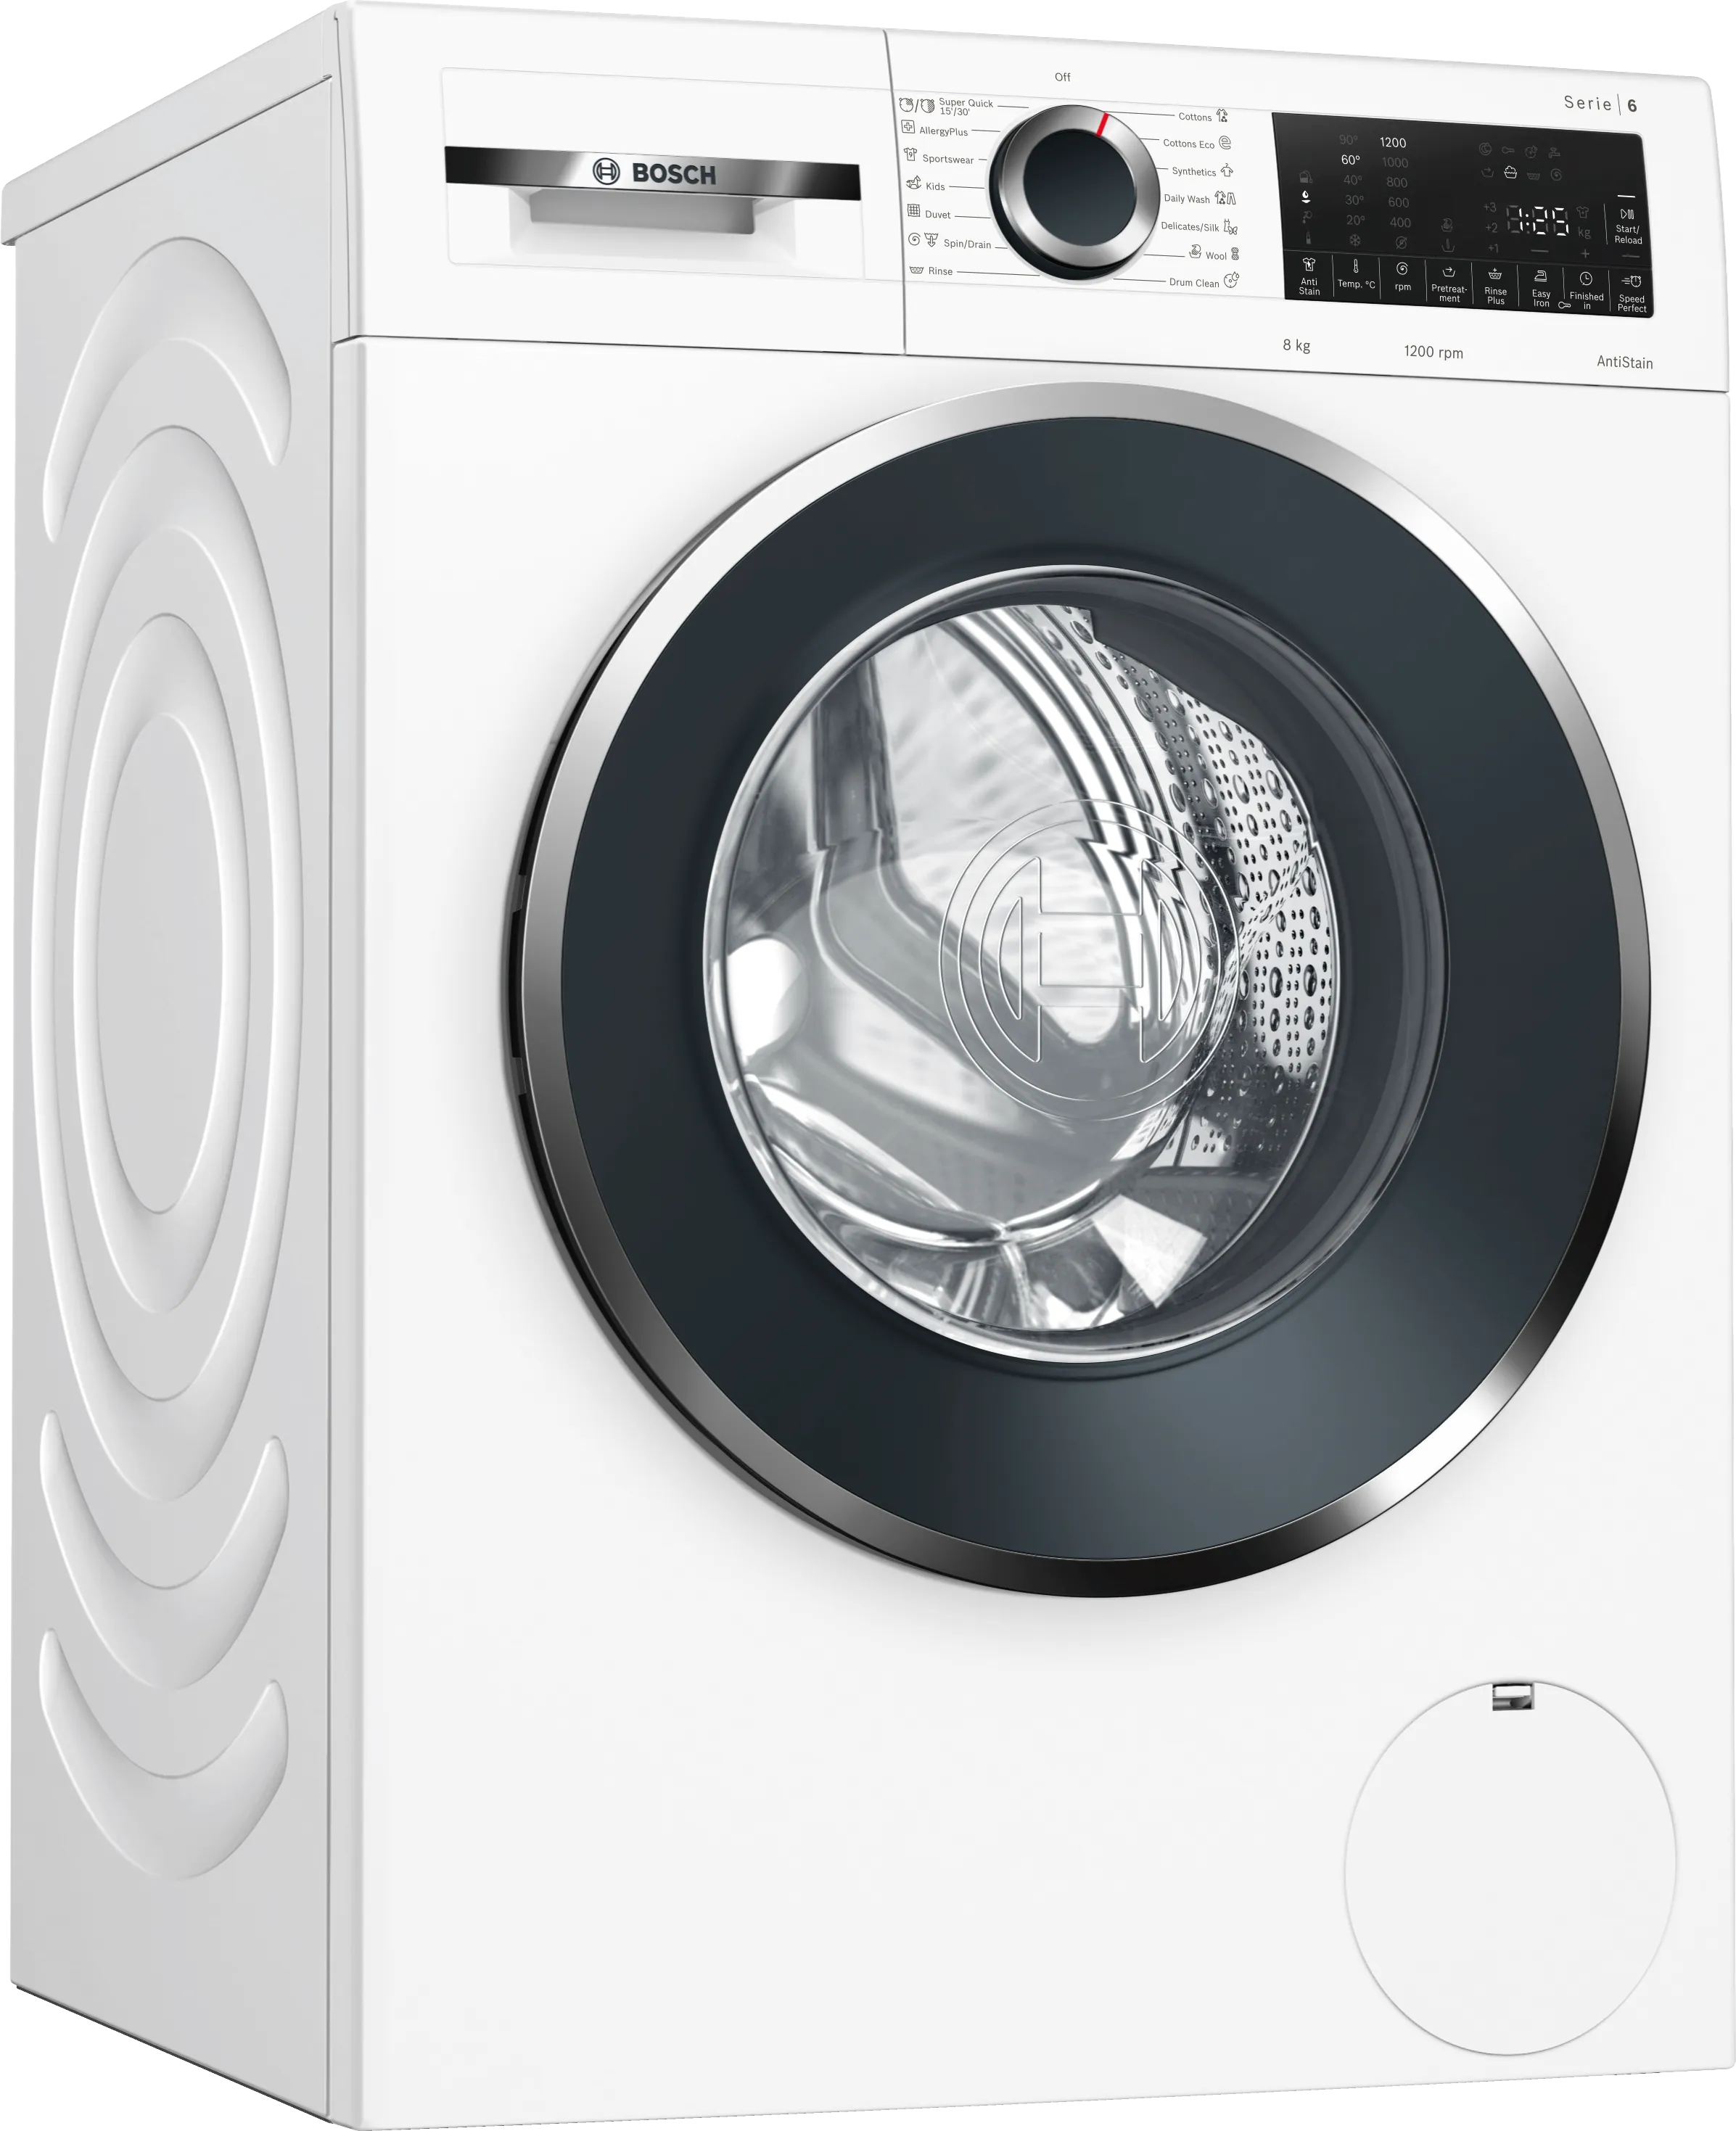 Series 6 Washing machine, front loader 8 kg 1200 rpm 